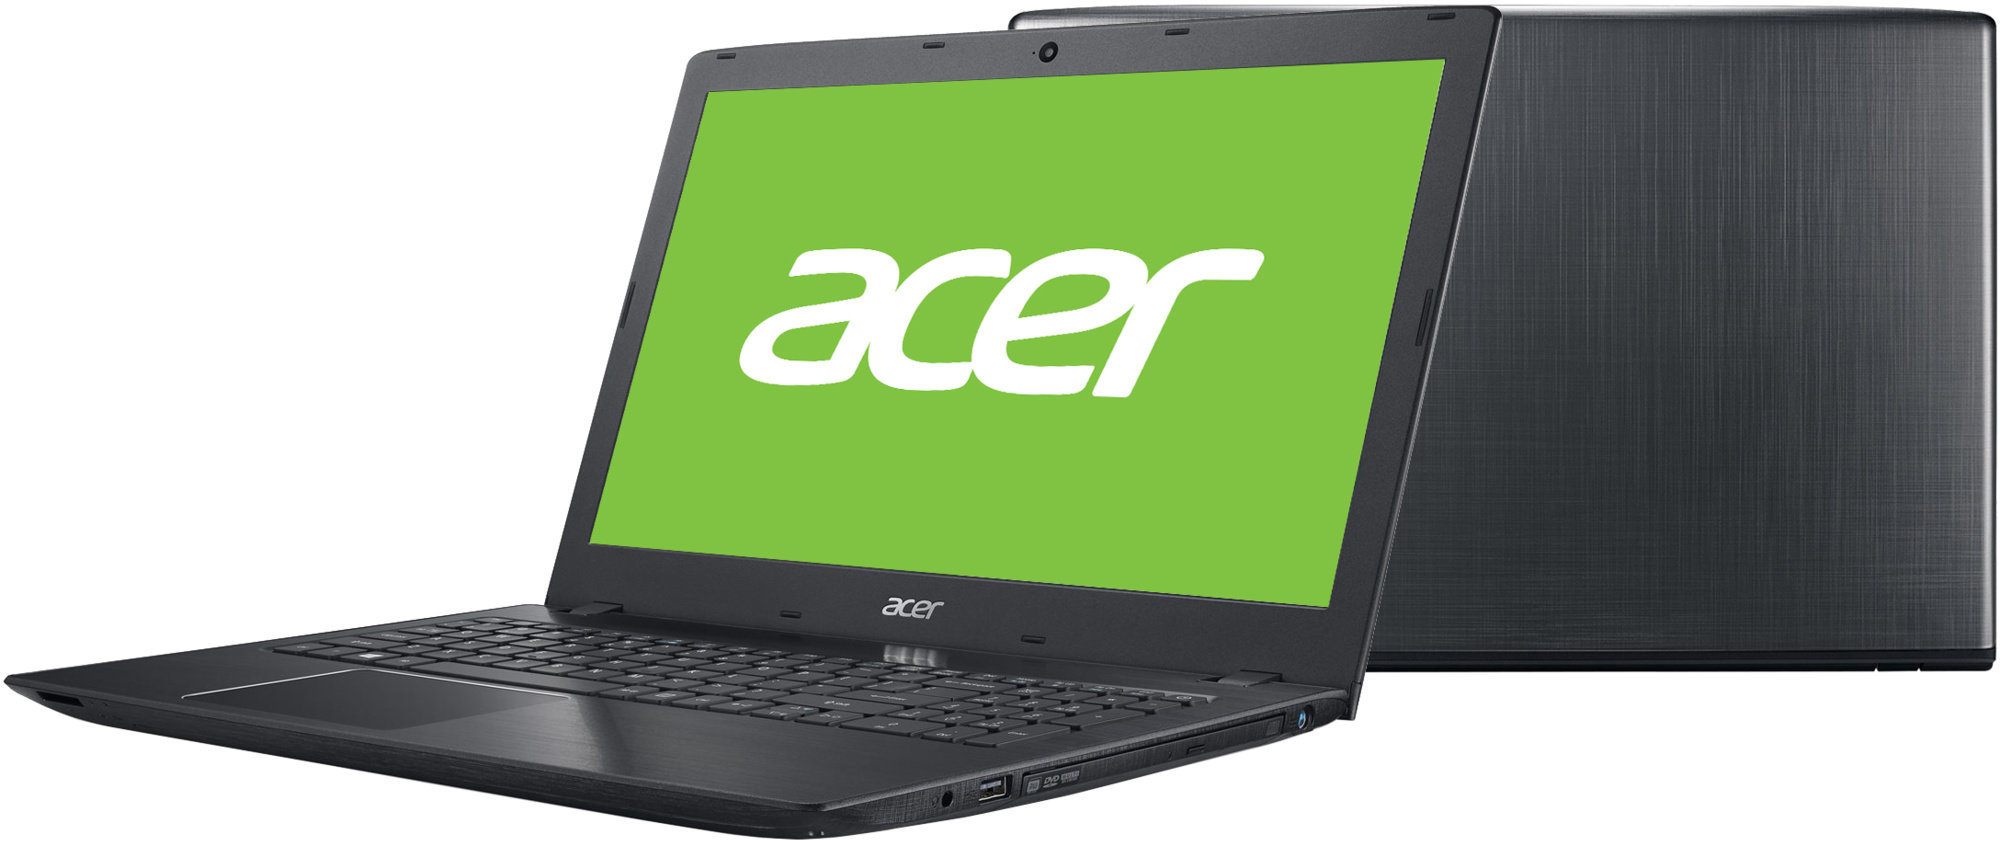 Aspire 5 цена. Acer a315-21g. Acer Aspire 3 a315-41g. Acer Aspire e15 e5-575g. Acer Aspire e 17.